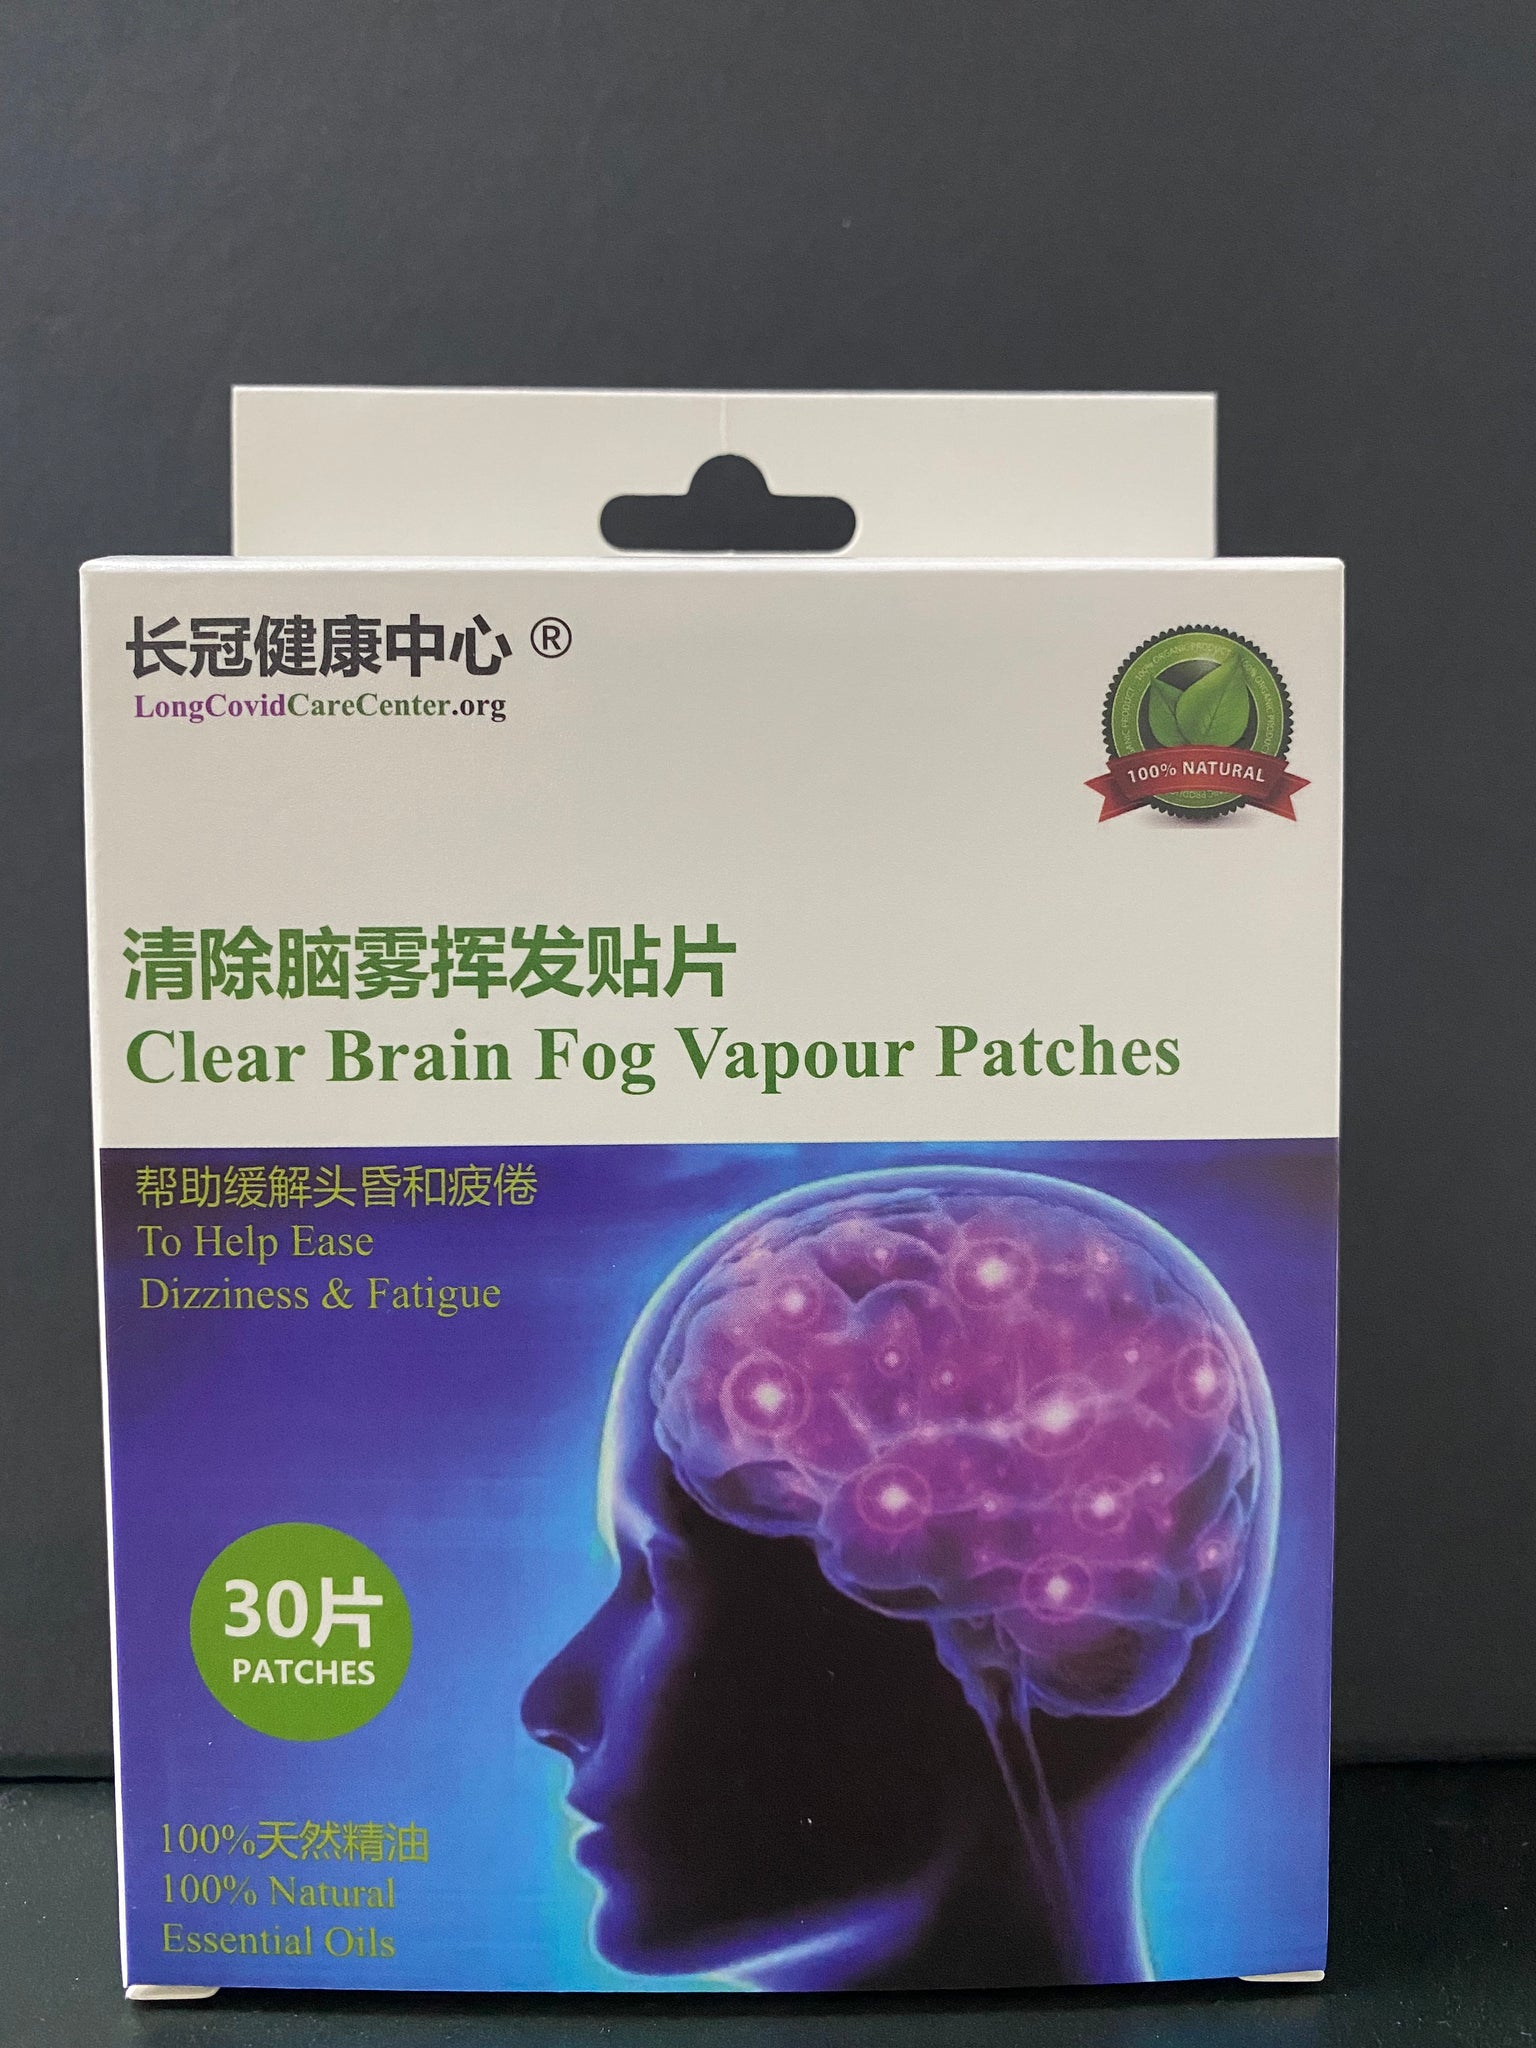 Clear Brain Fog Vapour Patches